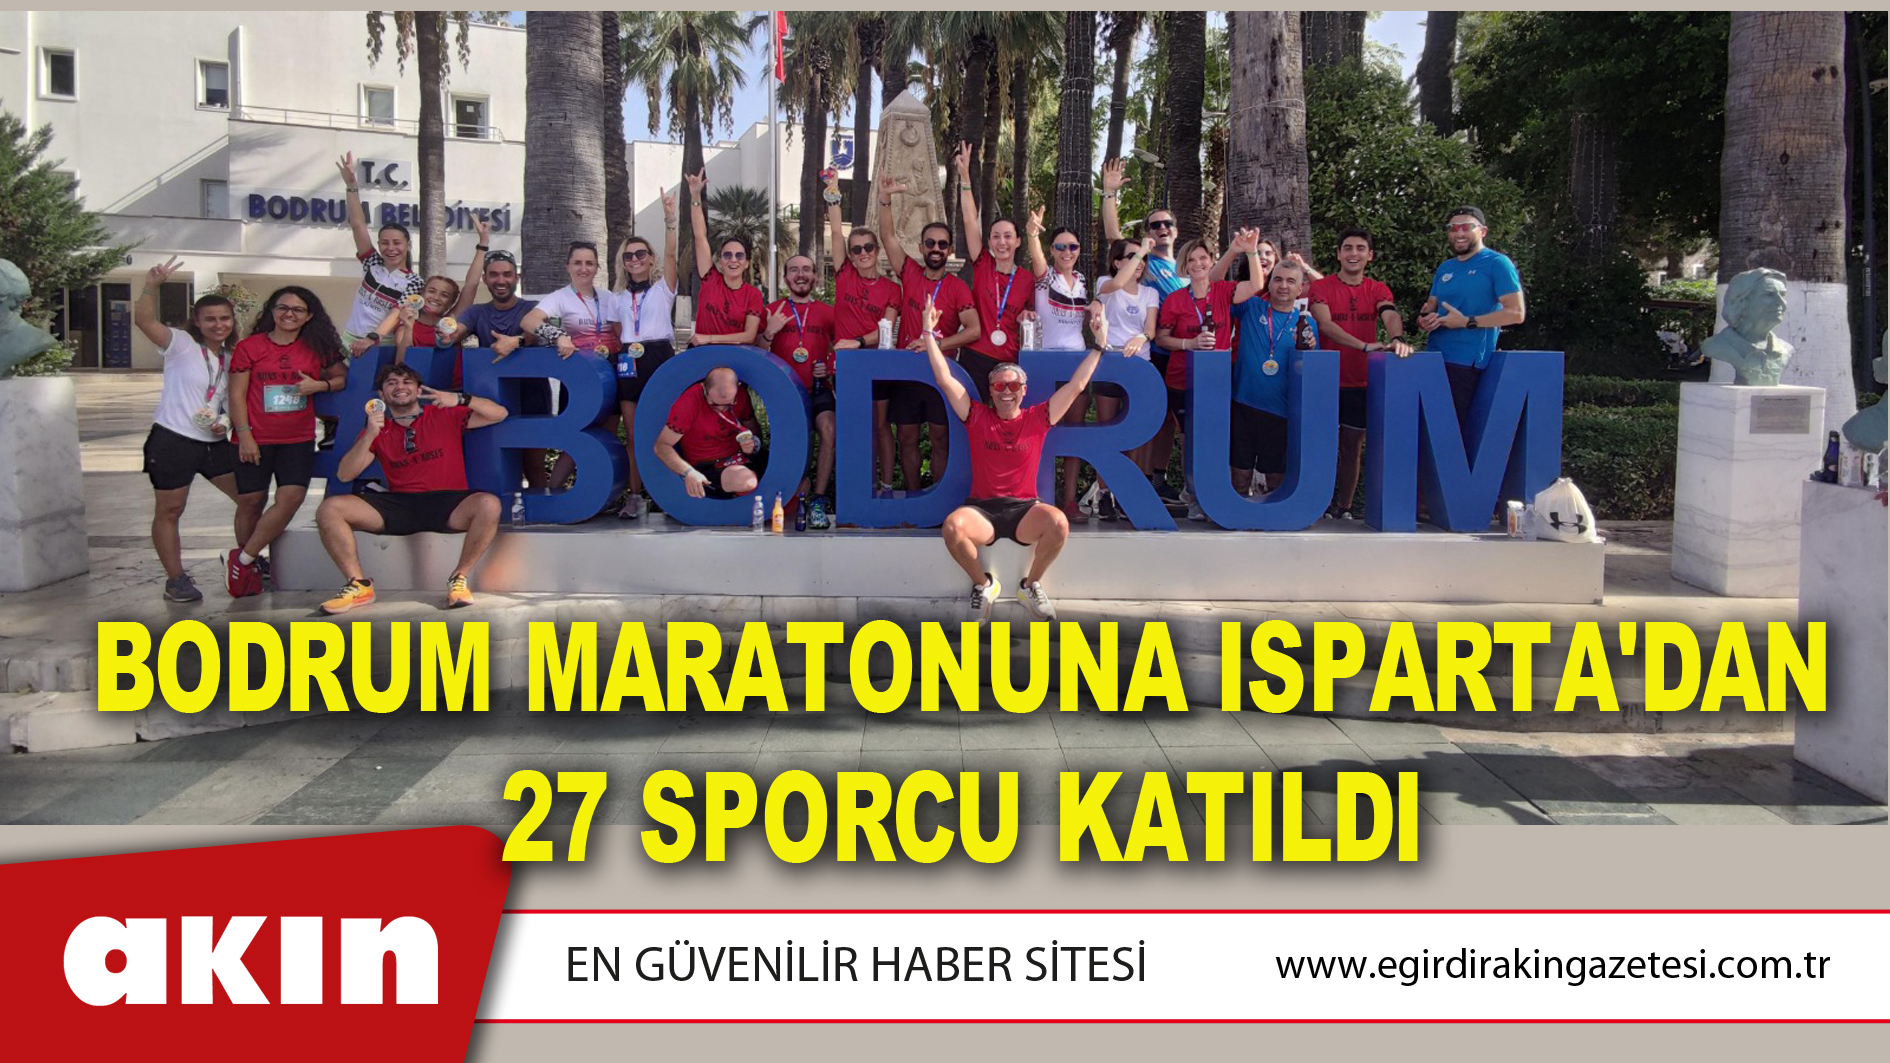 Bodrum Maratonuna Isparta'dan 27 Sporcu Katıldı